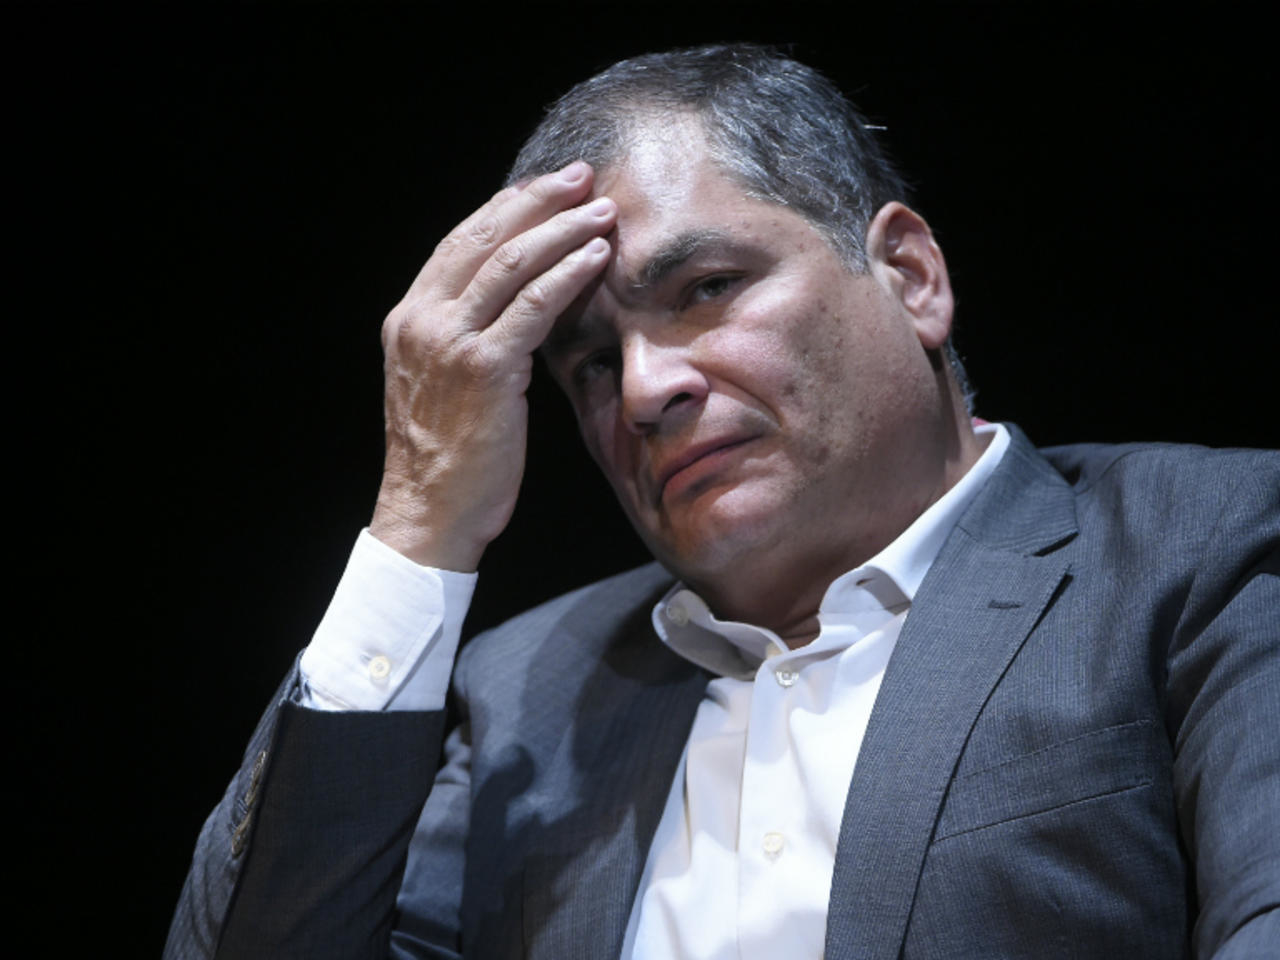 Ratifican condena a ex presidente Rafael Correa de Ecuador a 8 años de cárcel 